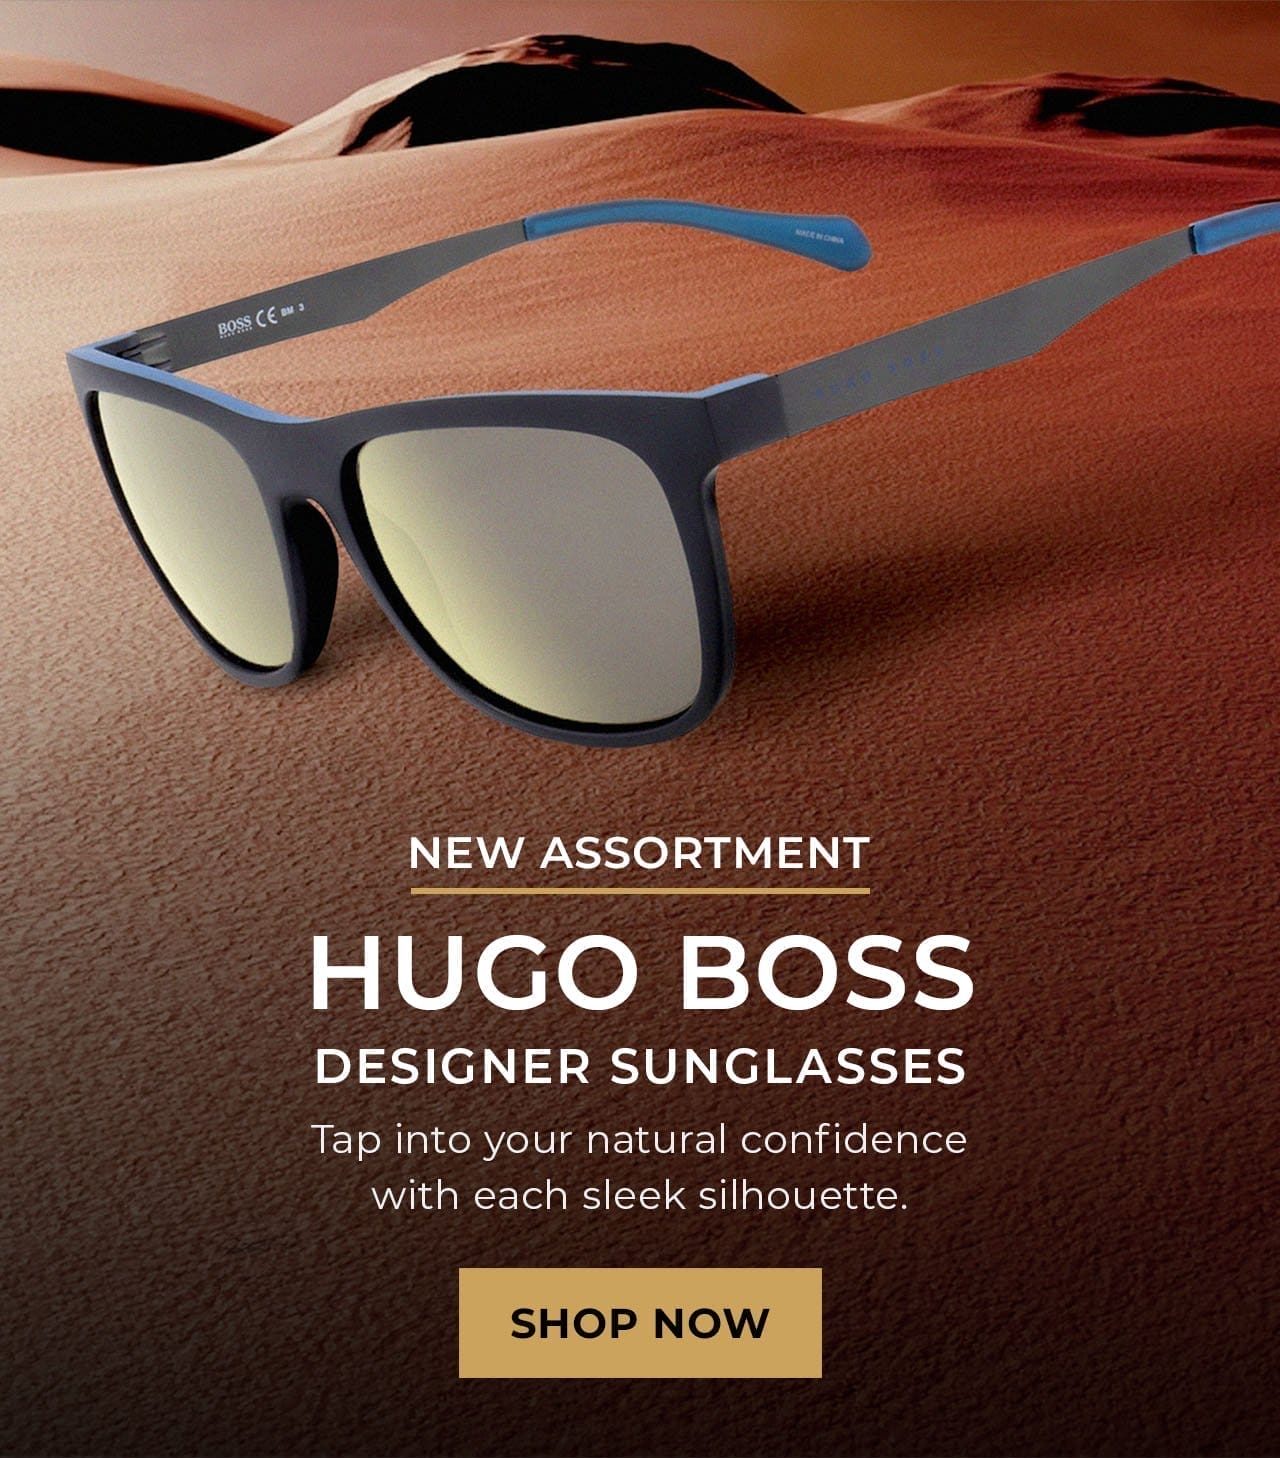 Hugo Boss Designer Sunglasses | SHOP NOW